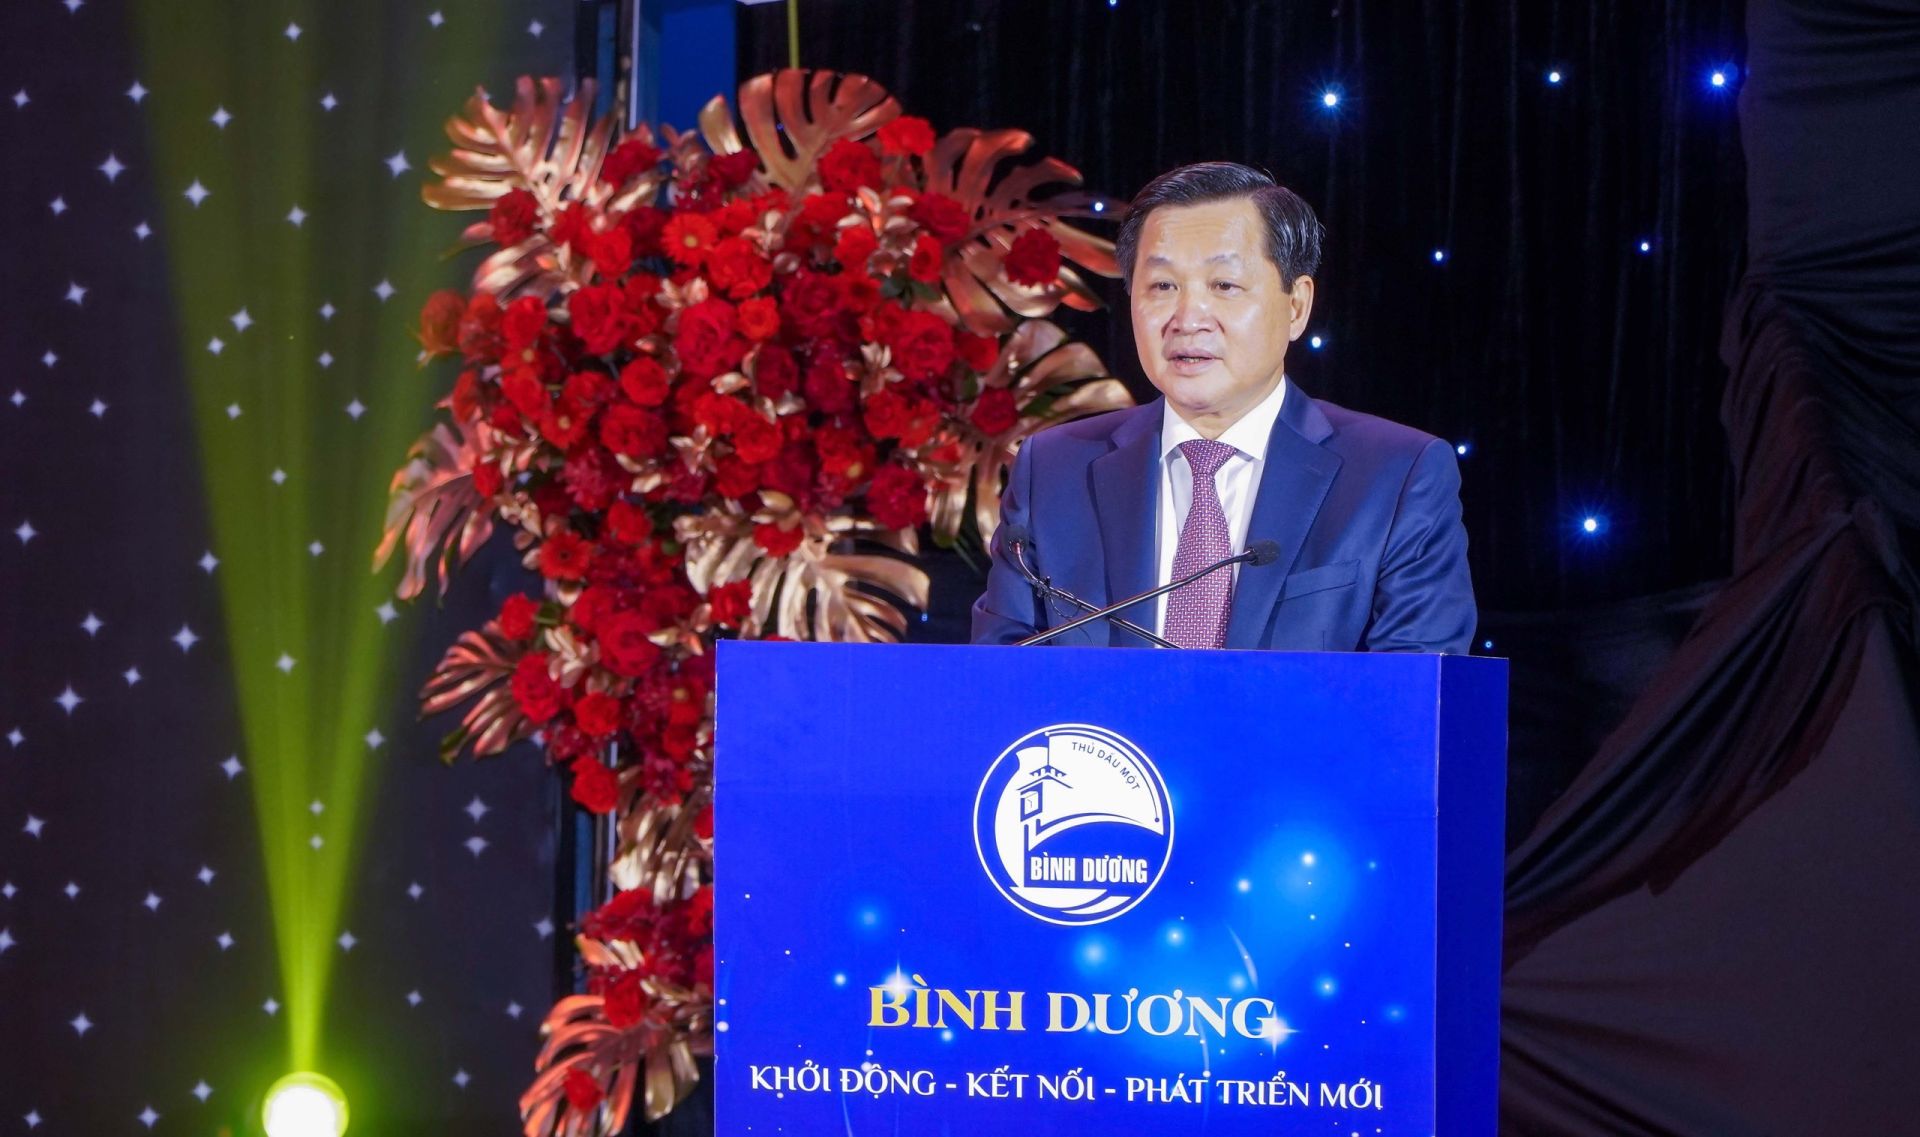 Đồng chí Lê Minh Khái, Bí thư Trung ương Đảng, Phó Thủ tướng Chính phủ